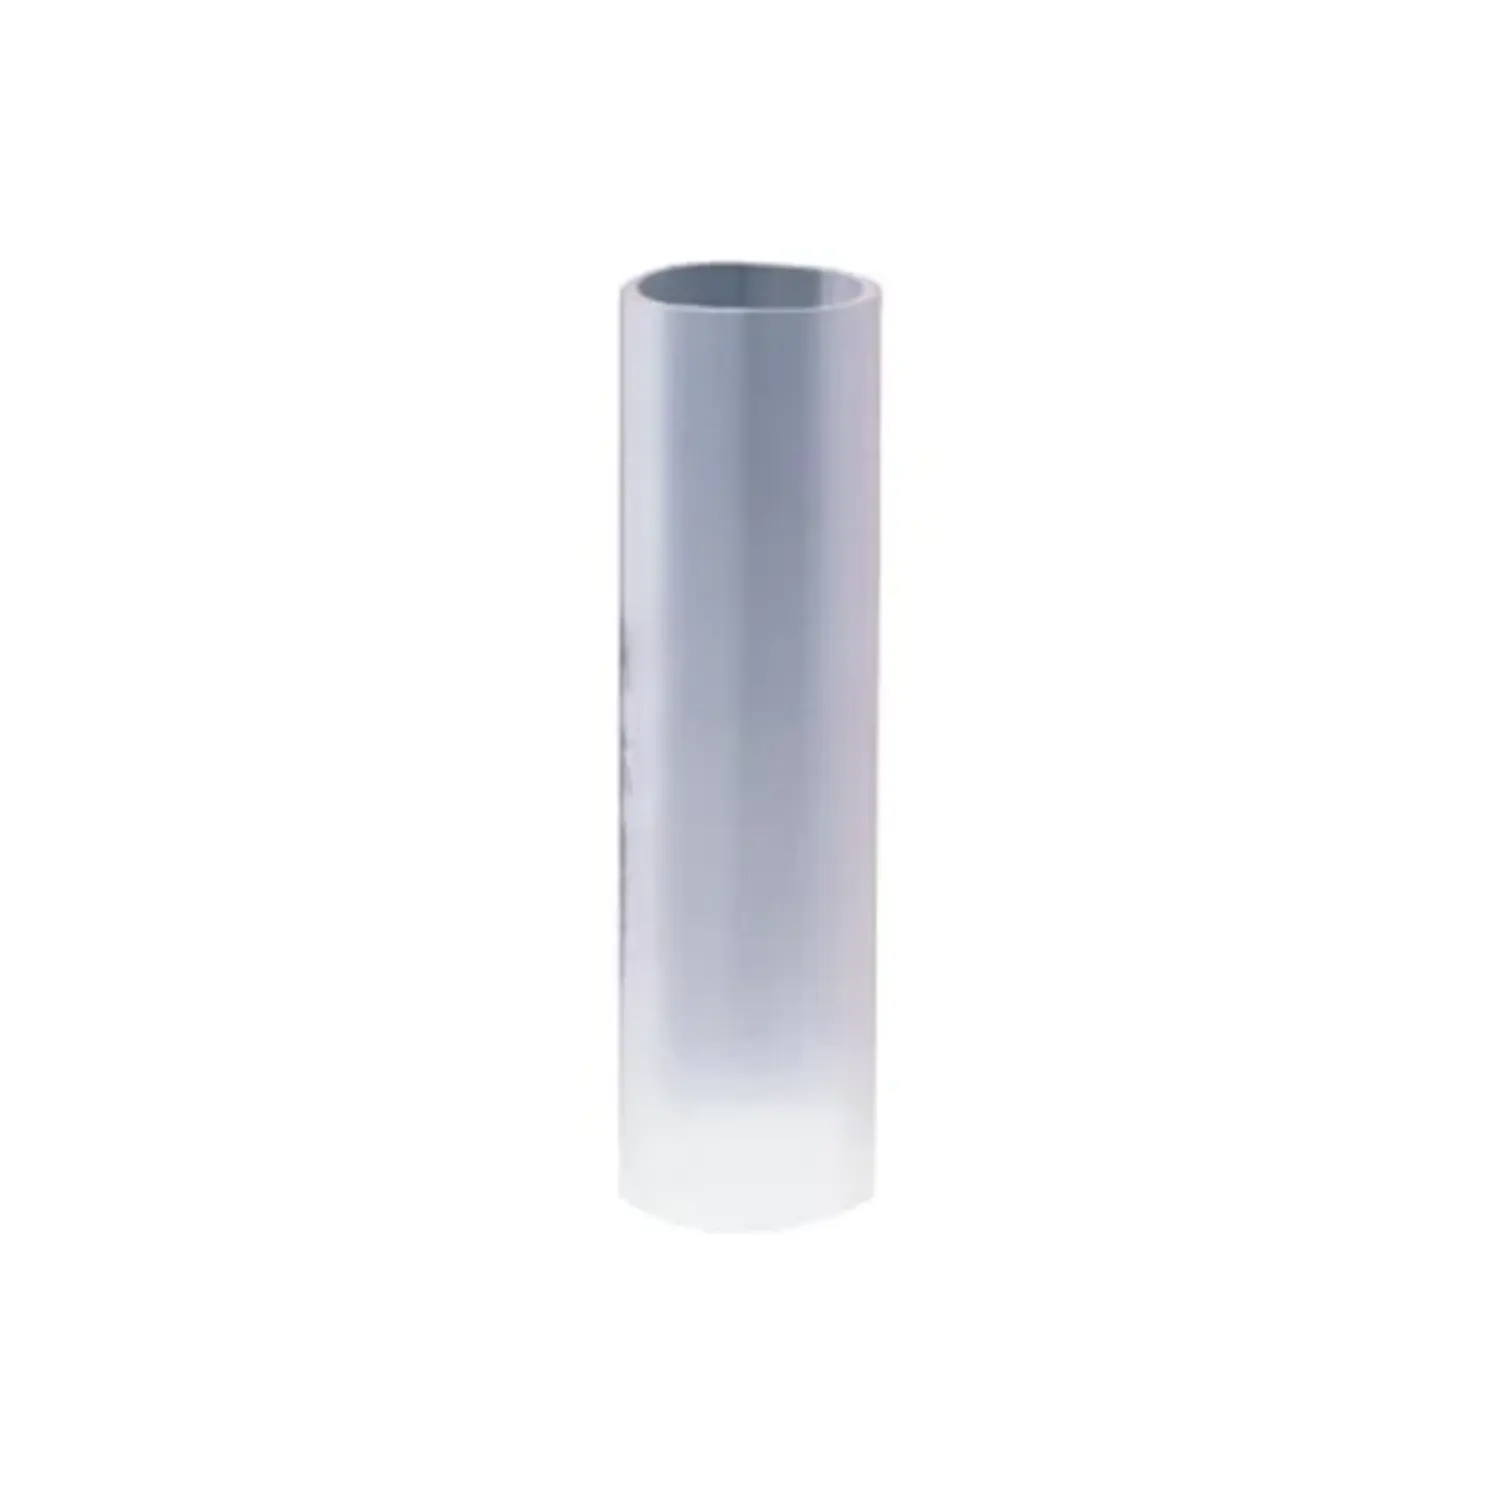 immagine giunto manicotto tubo corrugato incasso gewiss    trasparente CE 32 mm gew dx52032